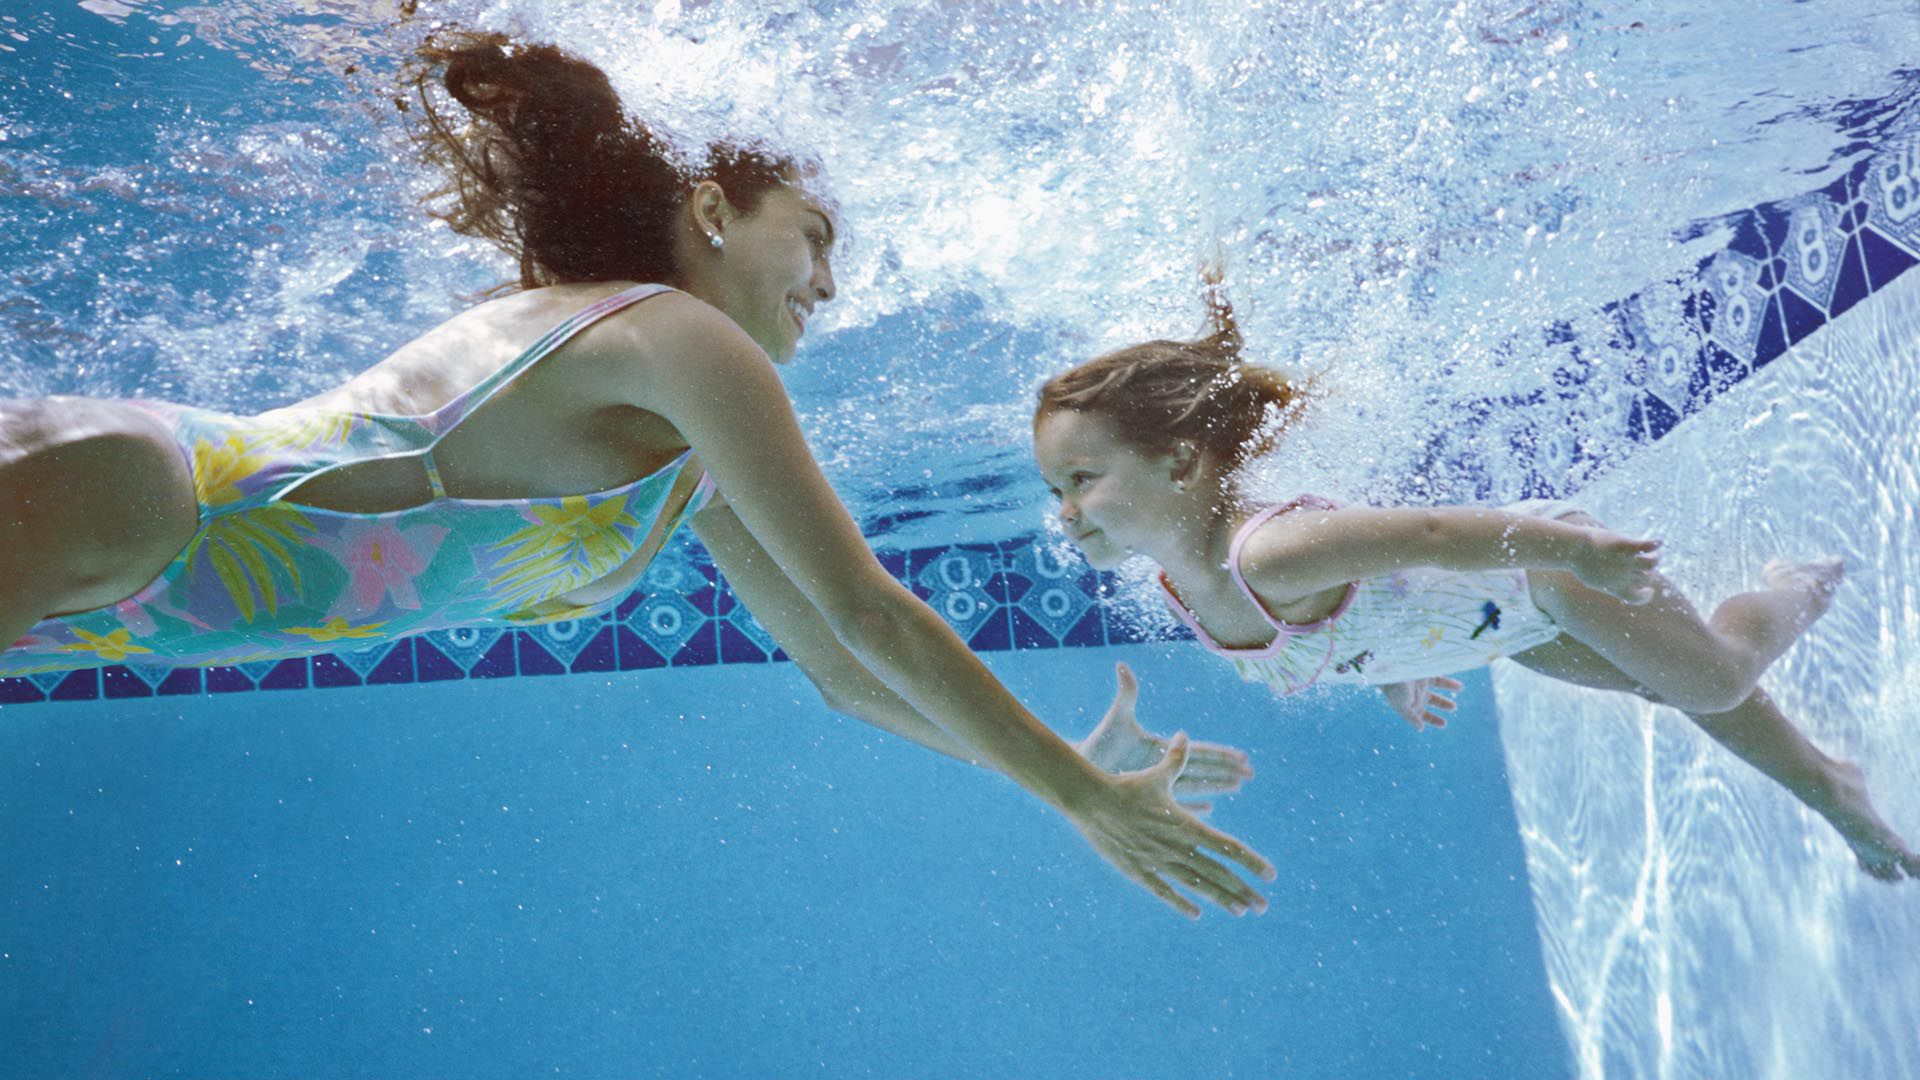 El ahogamiento es una tragedia prevenible que puede ocurrir en cualquier momento y lugar. Aprender a nadar es una medida preventiva básica (Getty)